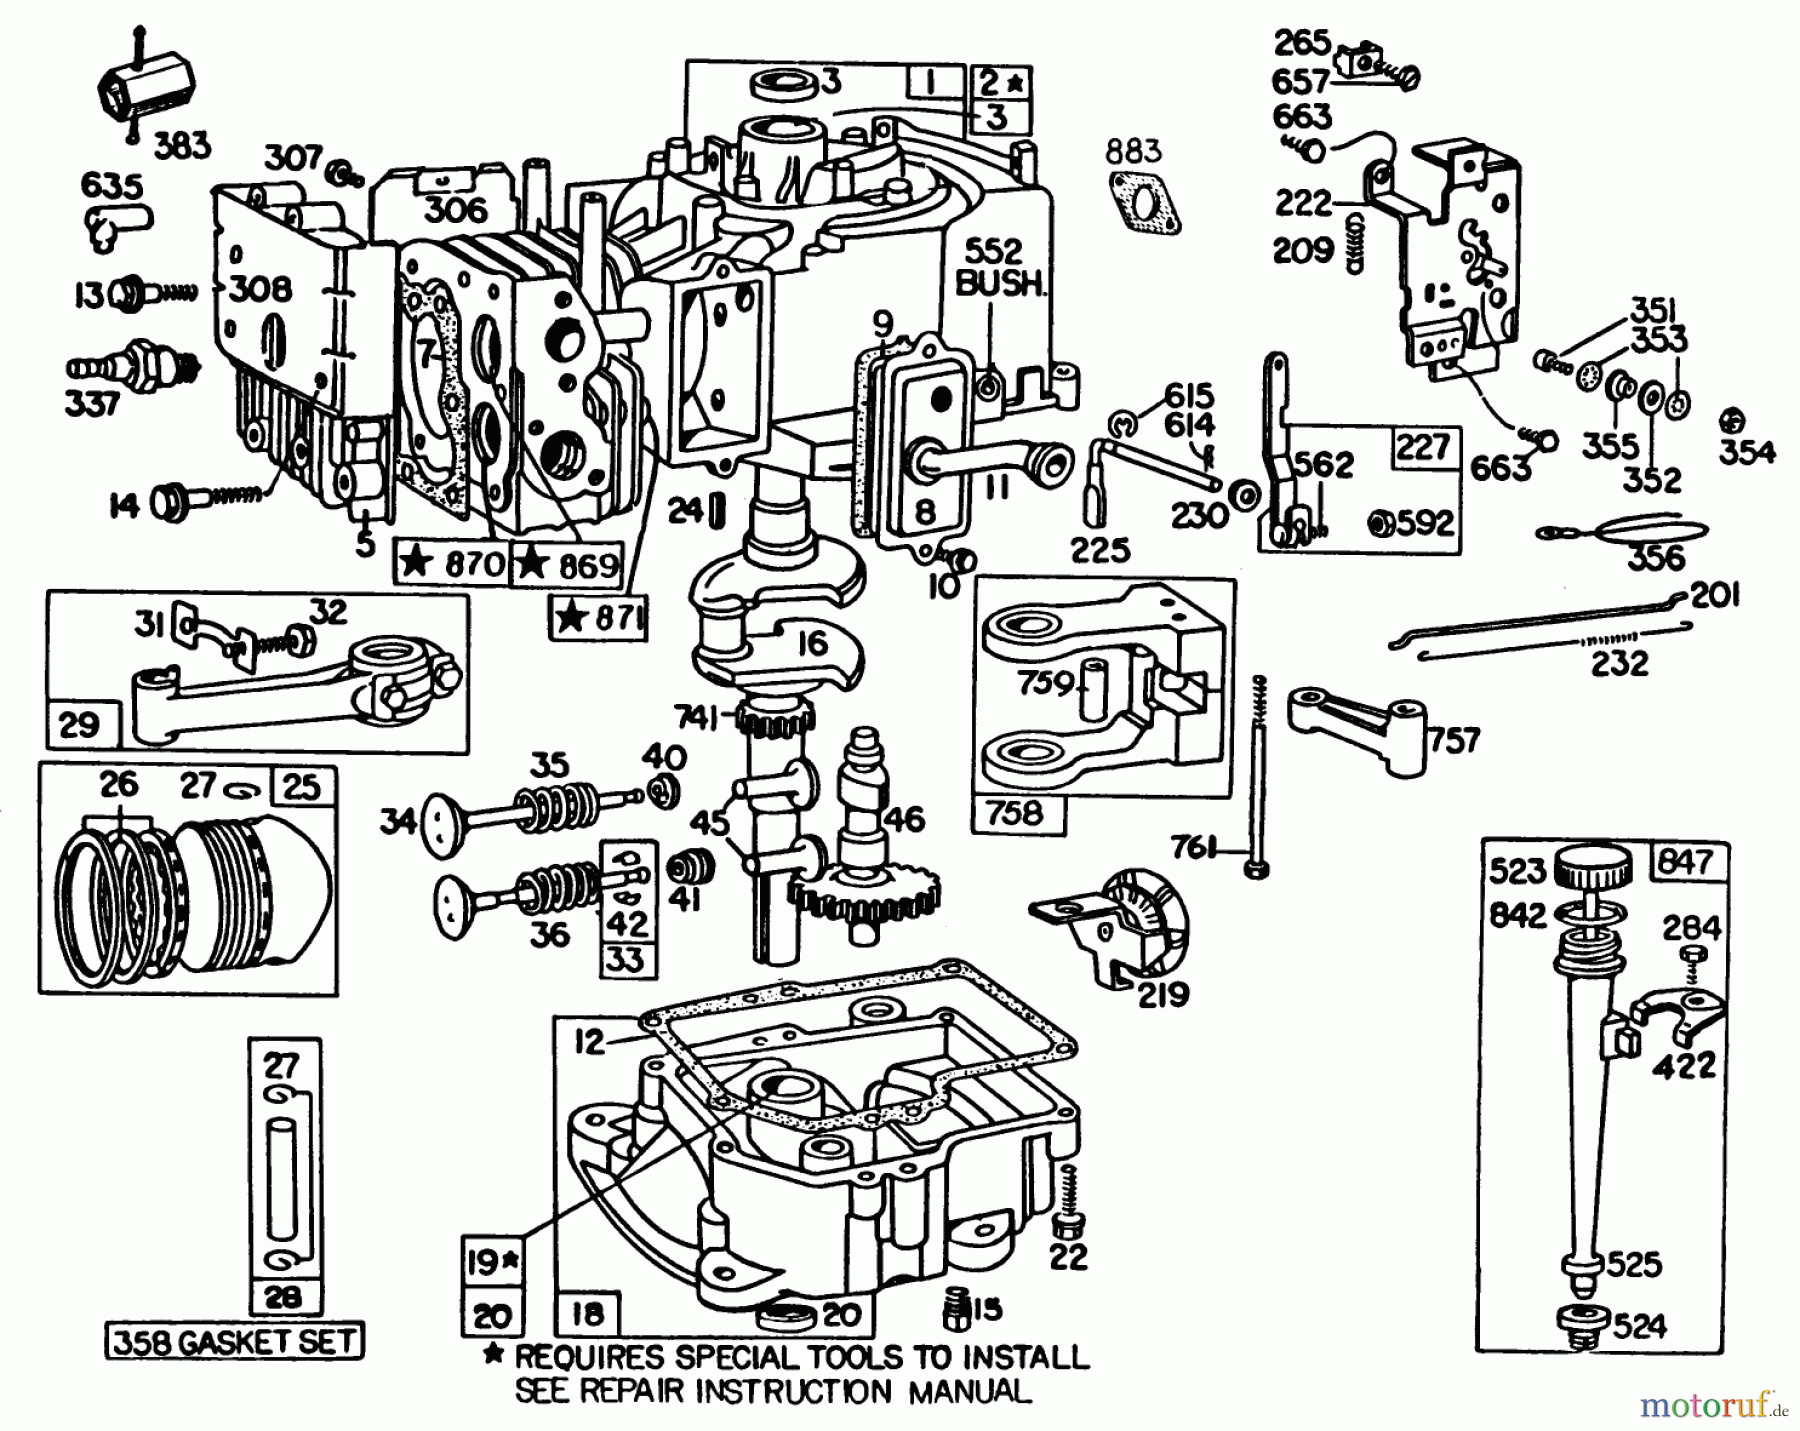  Toro Neu Mowers, Lawn & Garden Tractor Seite 1 57300 (8-32) - Toro 8-32 Front Engine Rider, 1983 (3000001-3999999) ENGINE BRIGGS & STRATTON MODEL 191707-5816-01 (MODEL 57300)